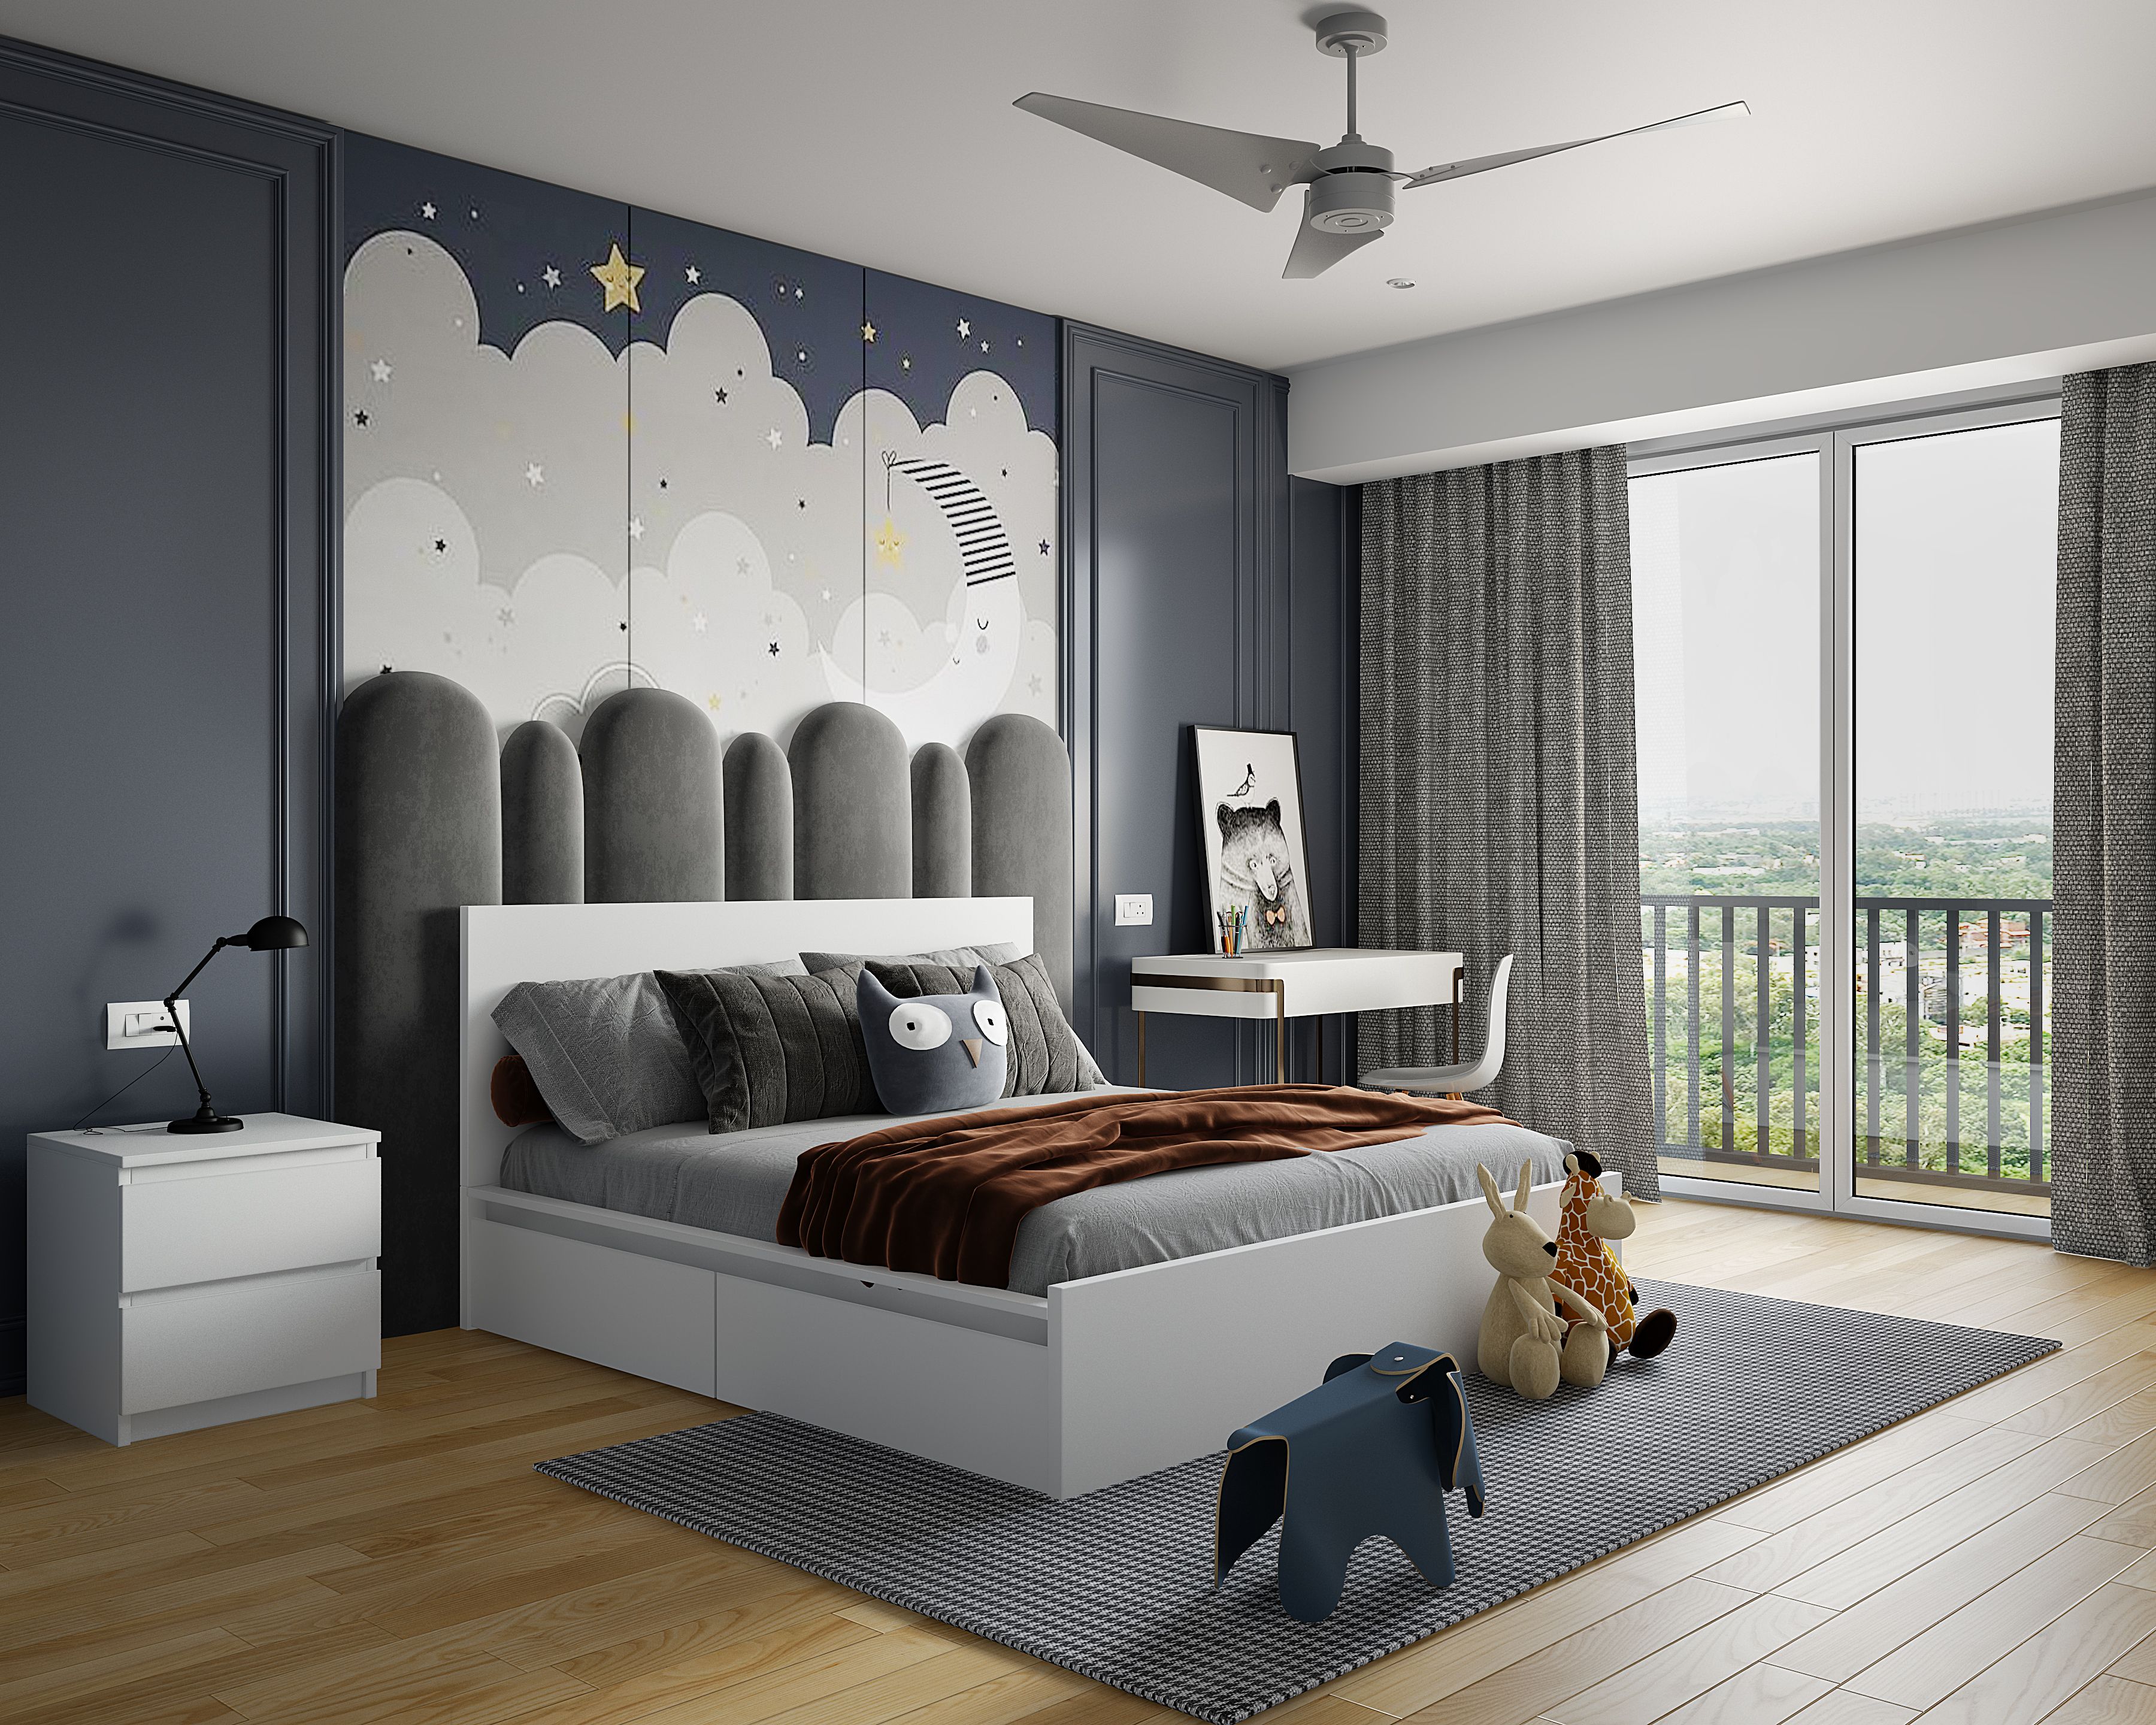 Modern Grey Kid's Bedroom Design With Cloud Wallpaper